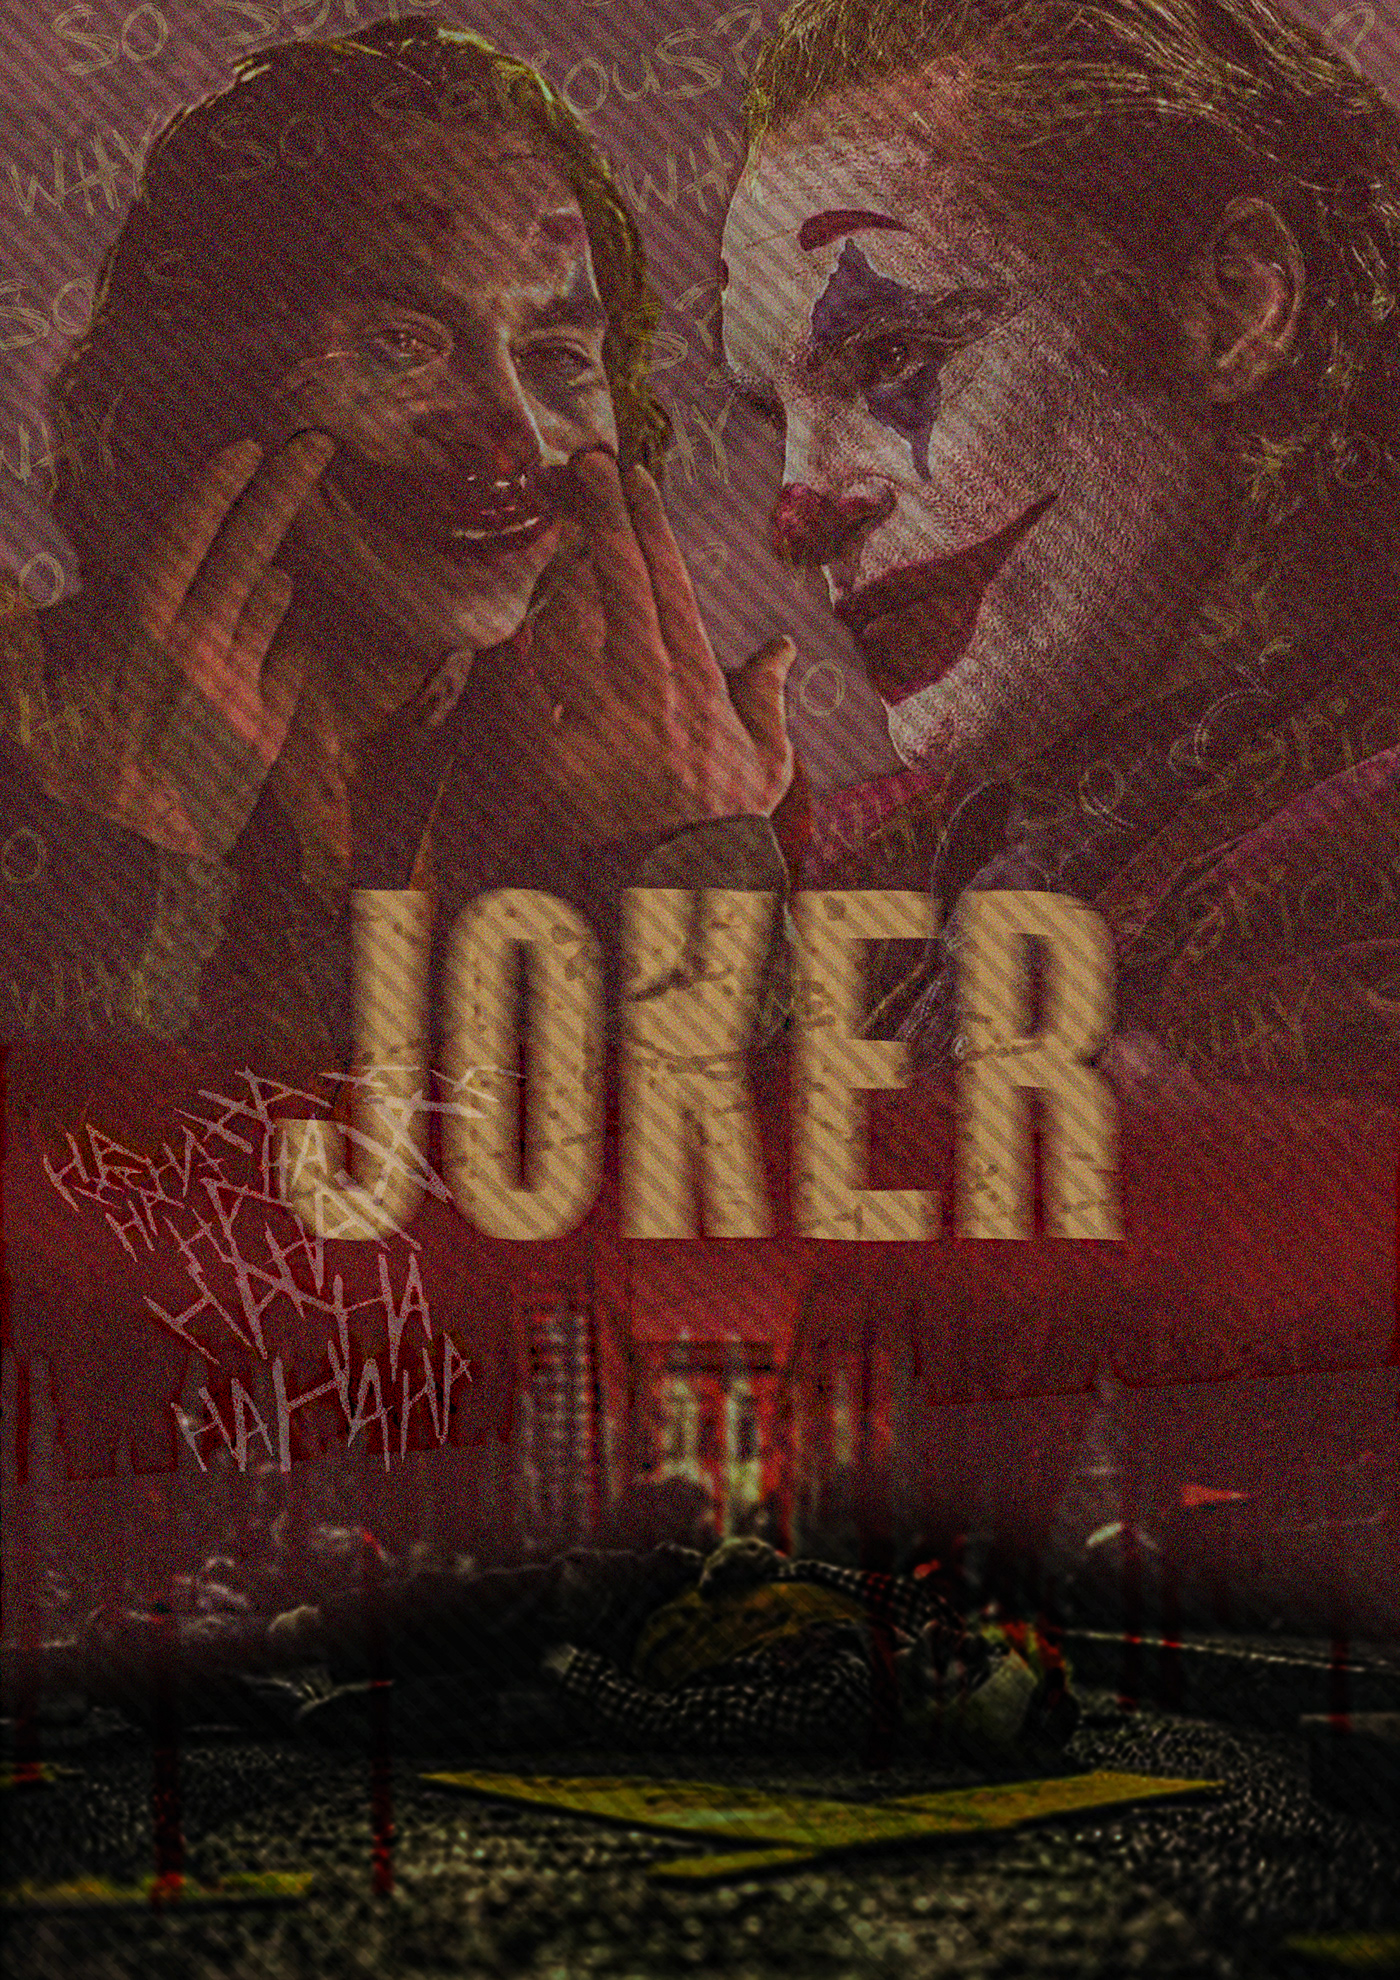 poster designer joker